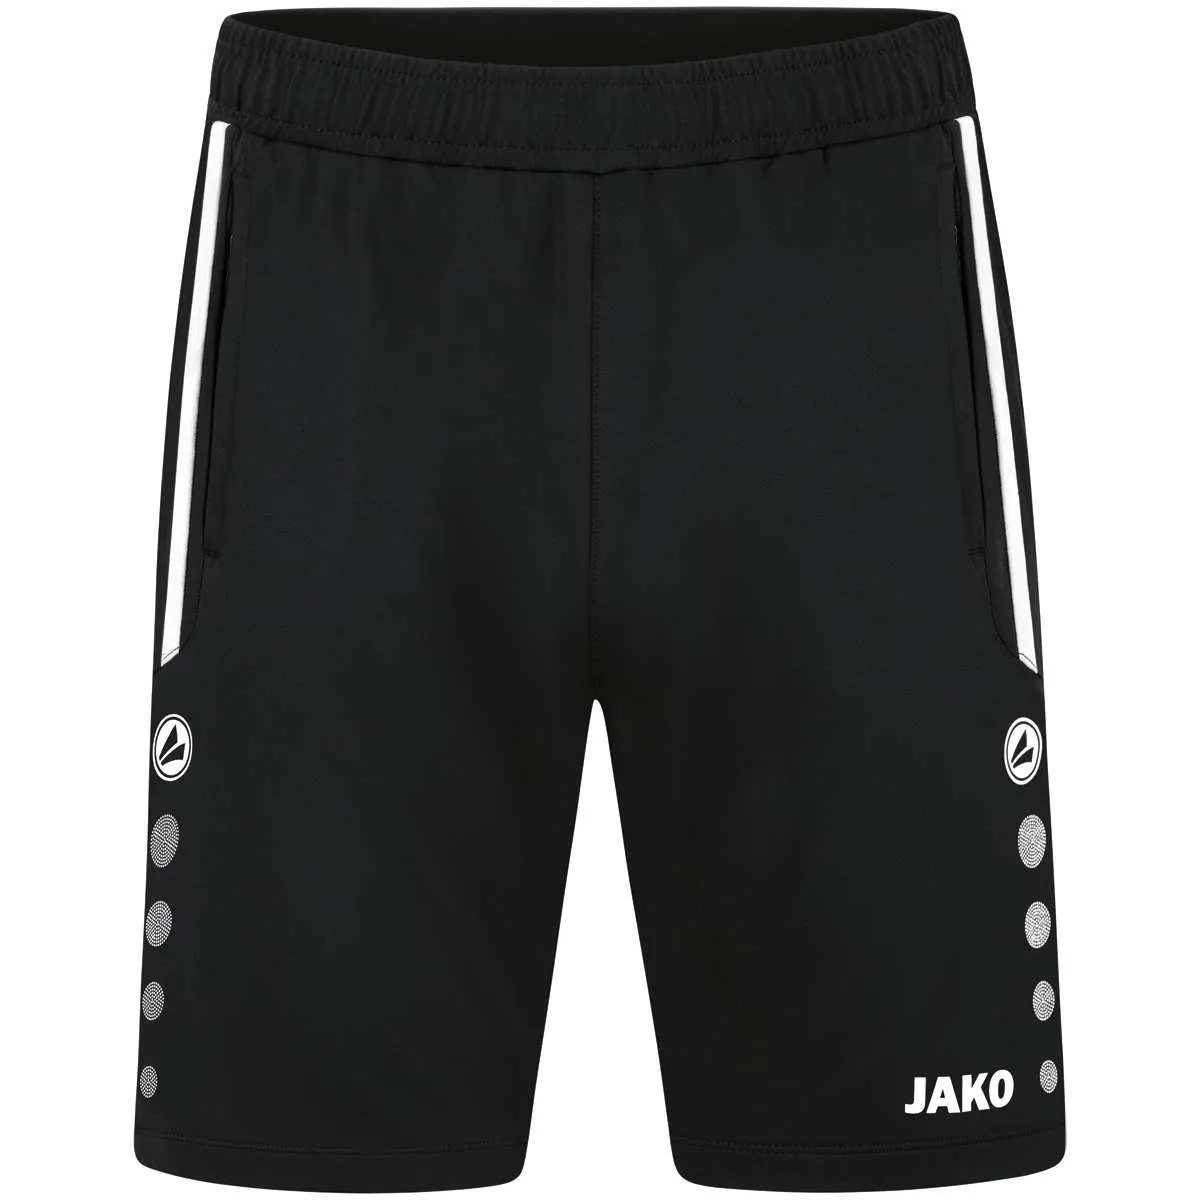 Jako training shorts Allround black for women, men and children